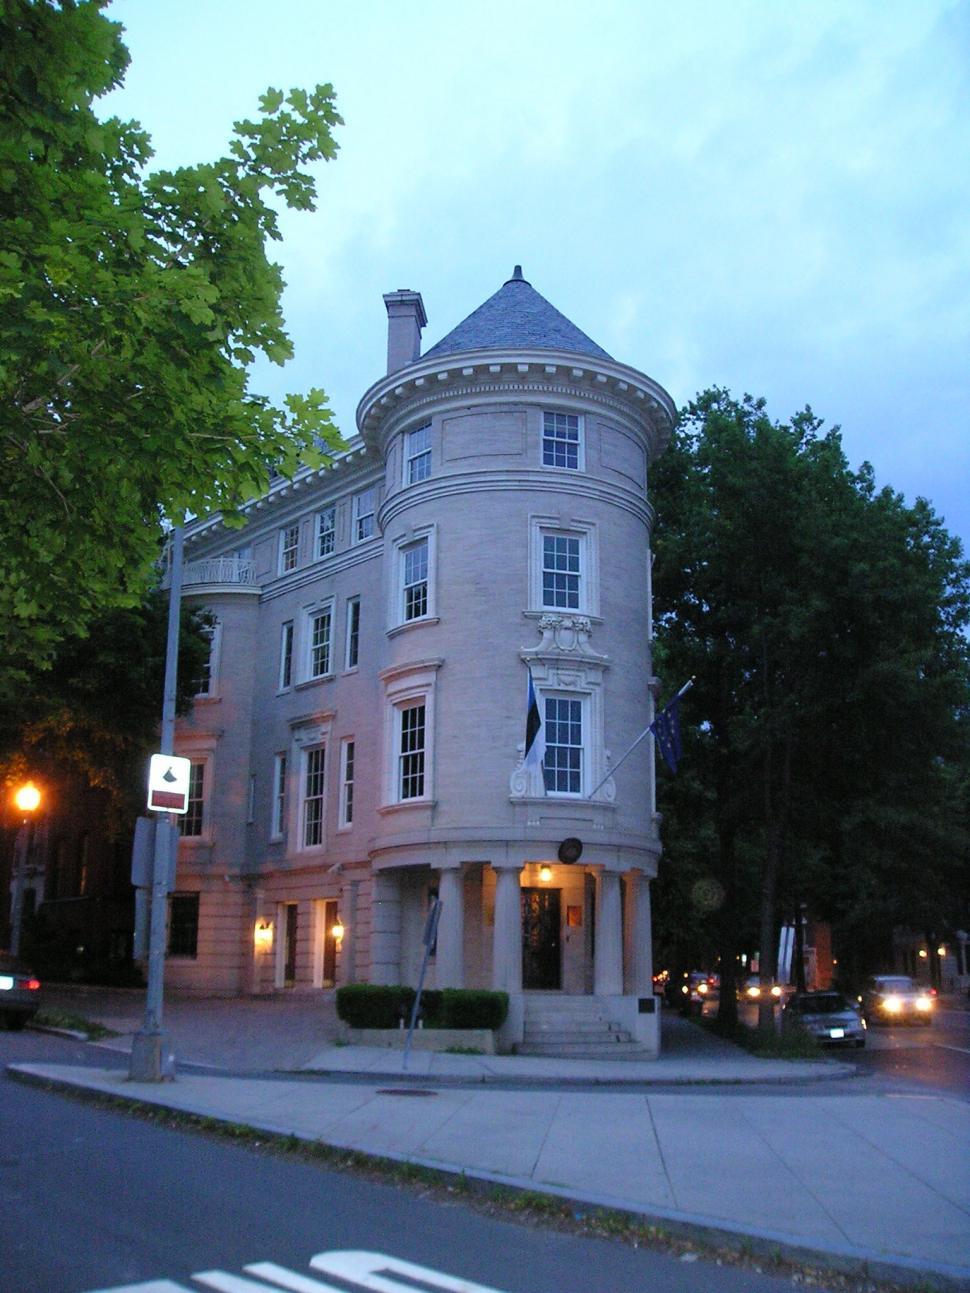 Free Image of Mansion in Washington (c) 